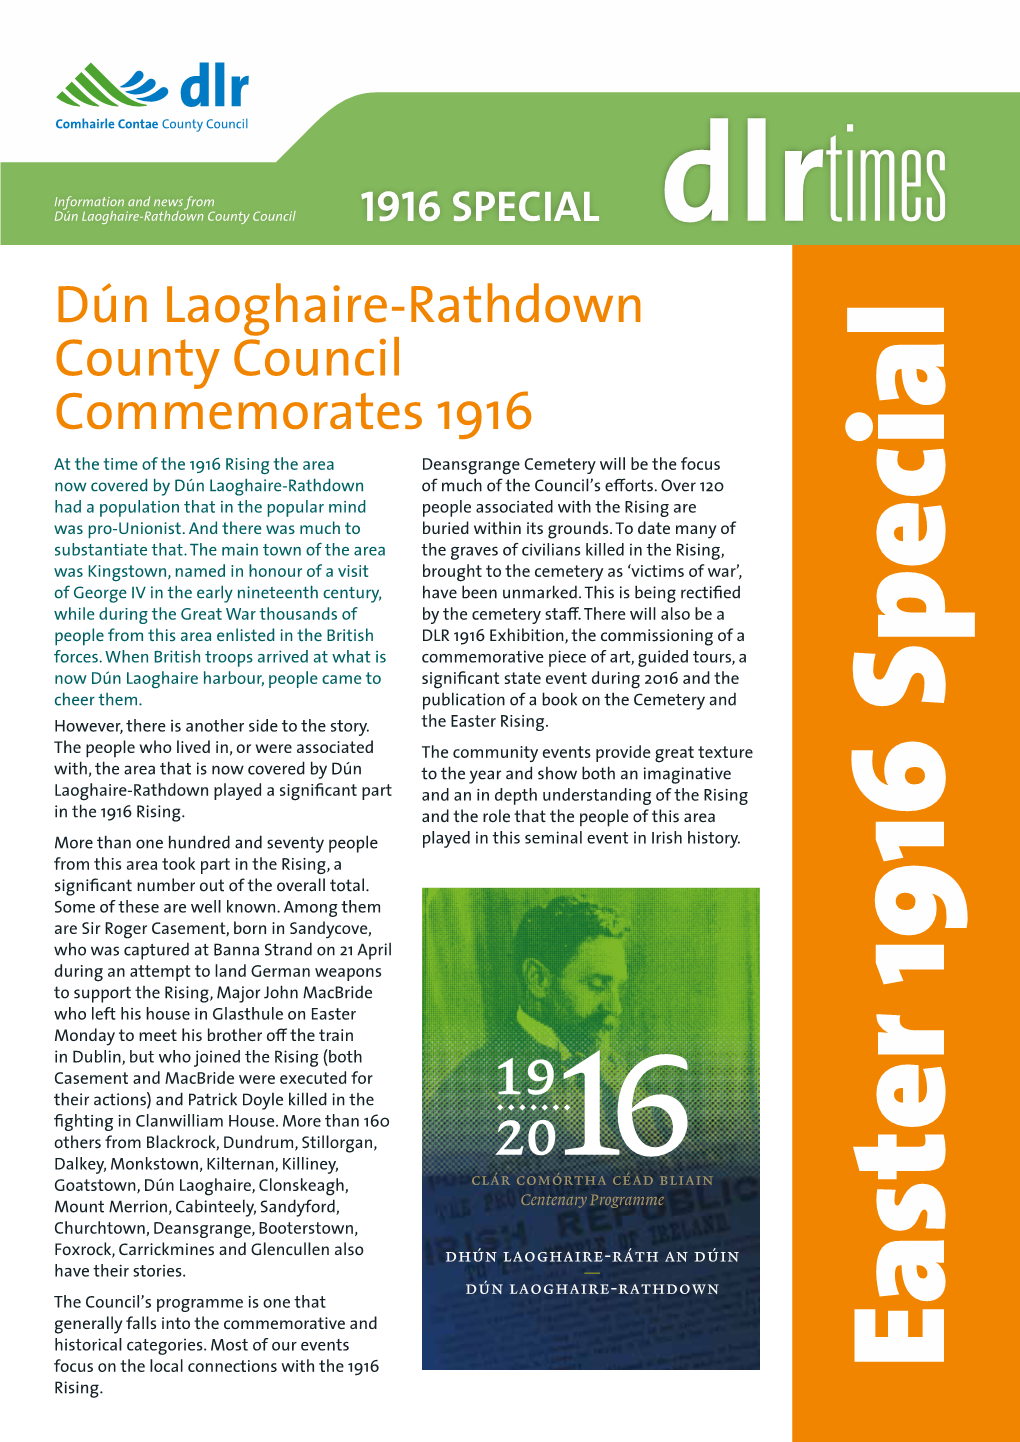 Dún Laoghaire-Rathdown County Council Commemorates 1916